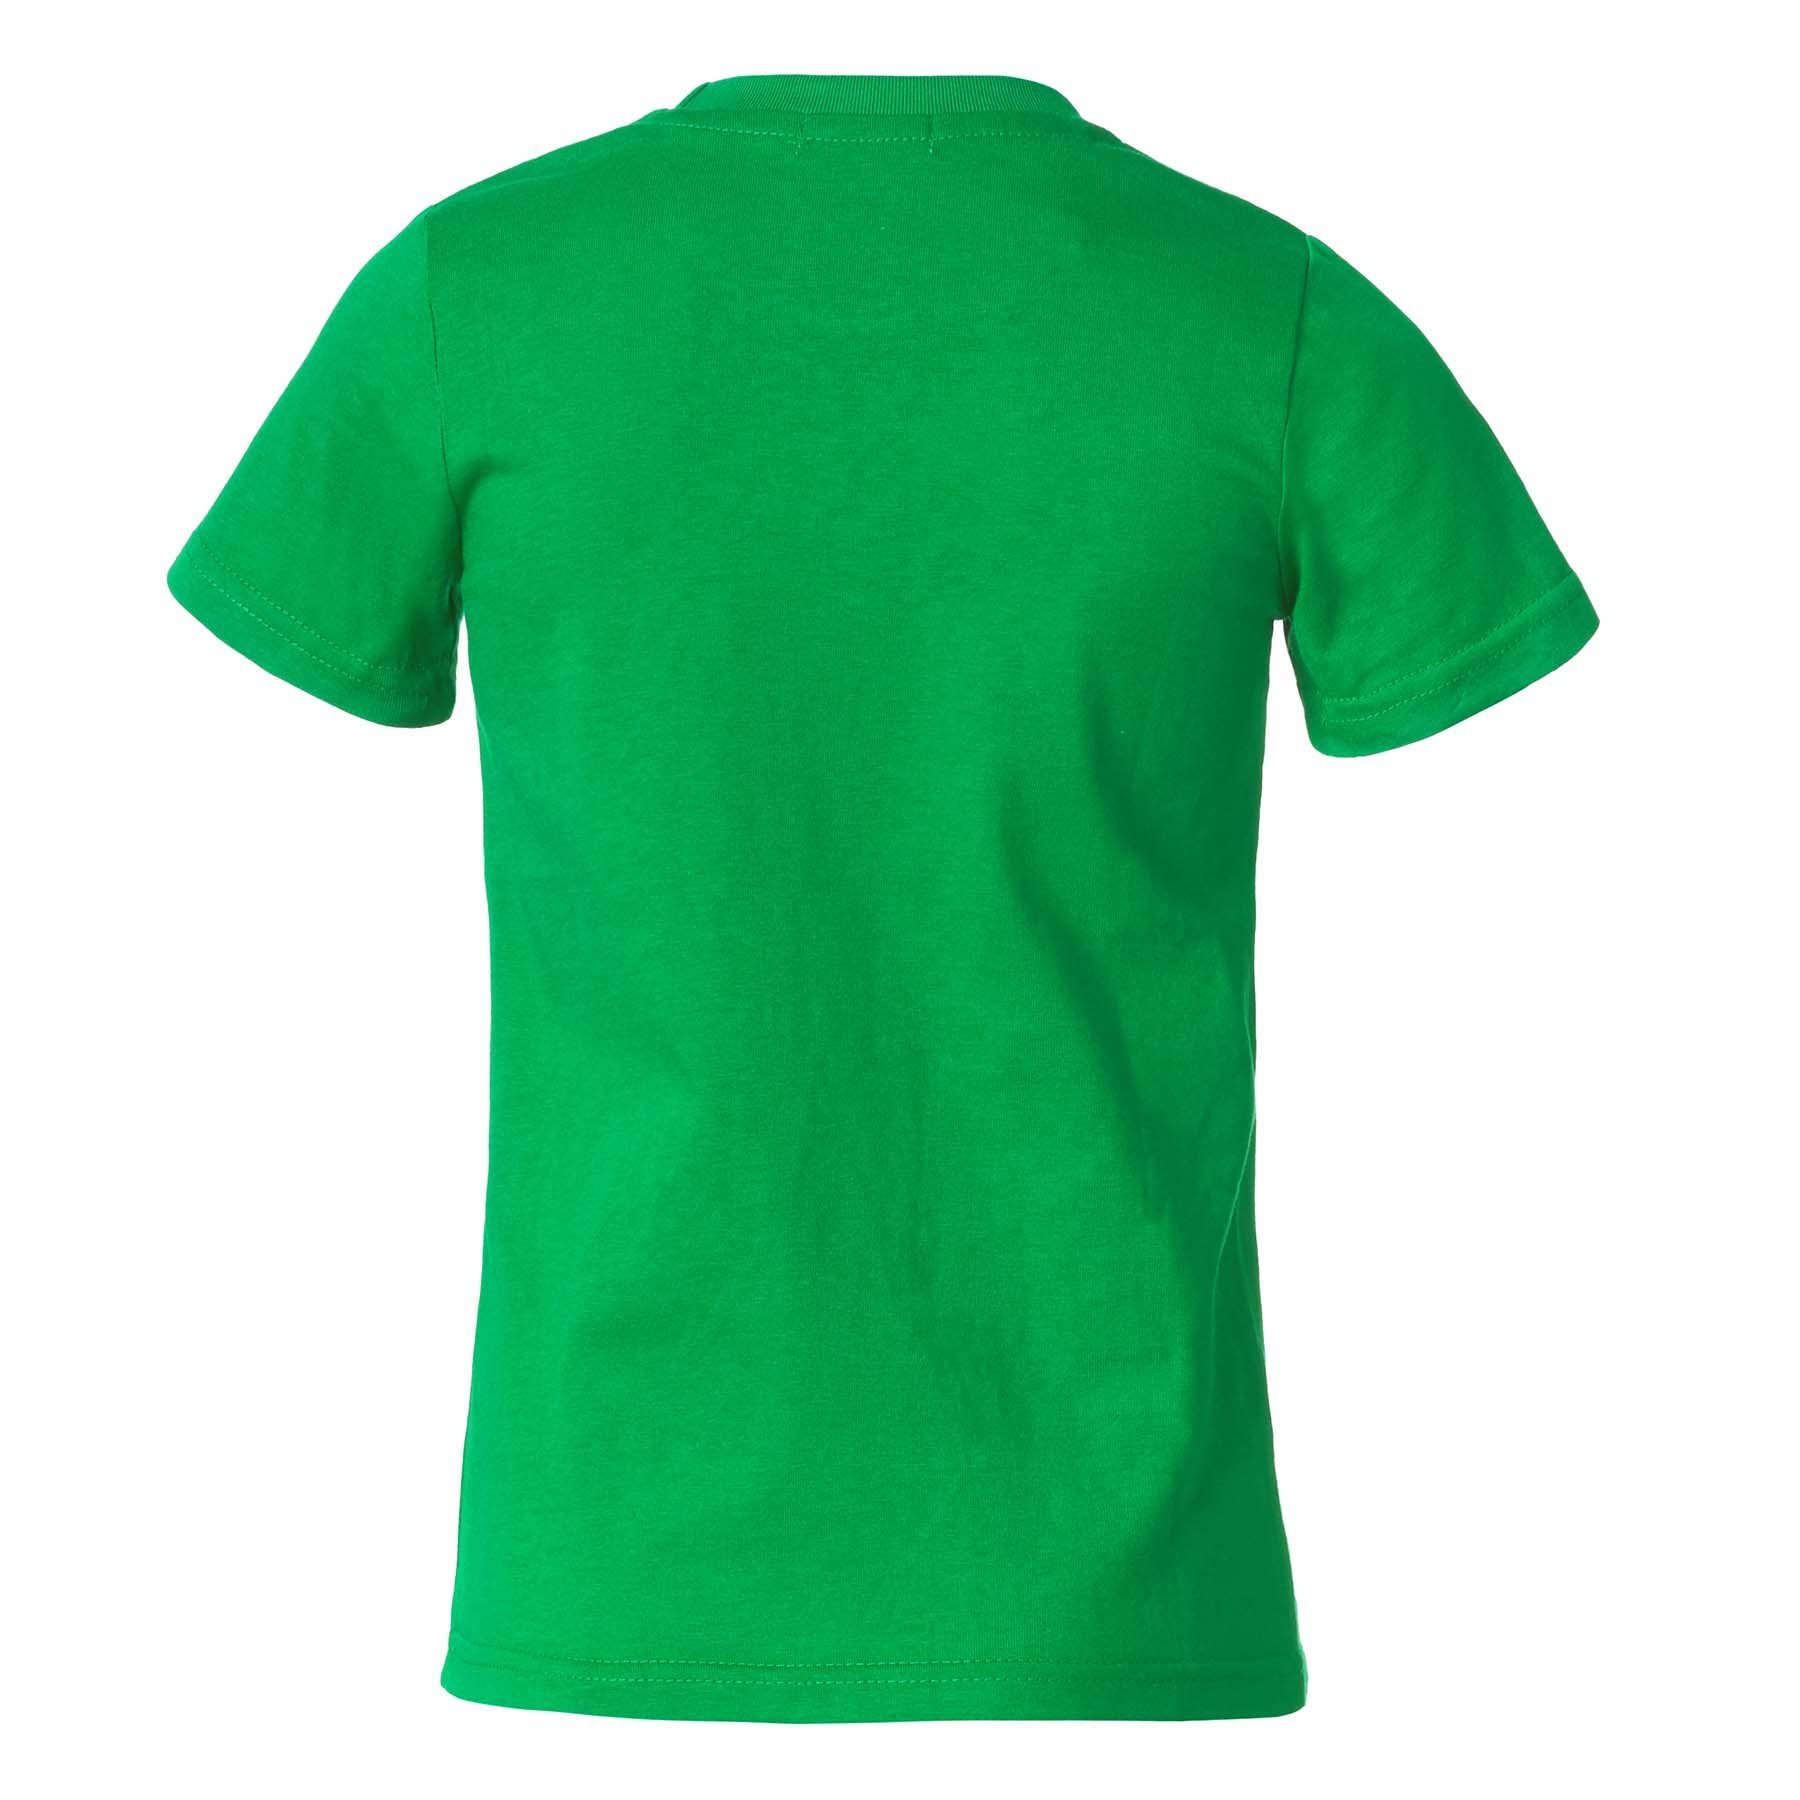 Männer dressforfun T-Shirt T-Shirt grün Rundhals